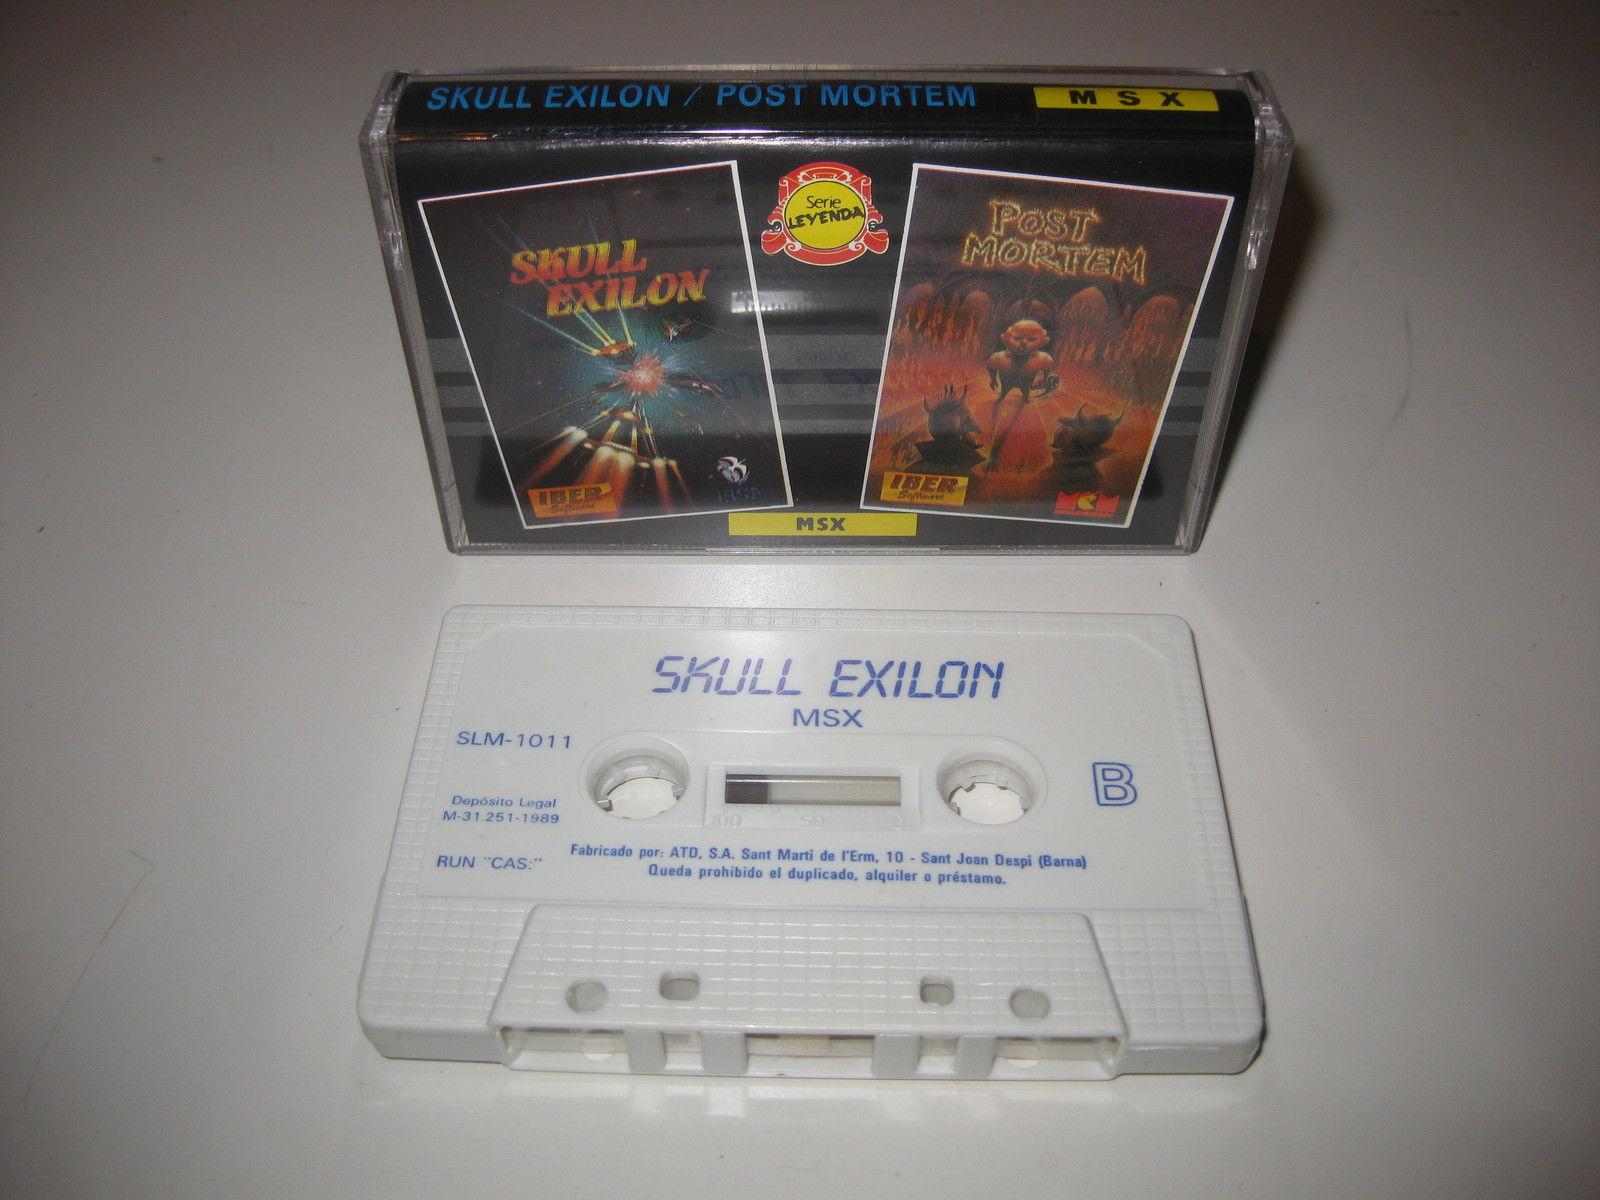 Skull Exilon / Post Mortem (1989, MSX, Iber Soft) | Releases ...